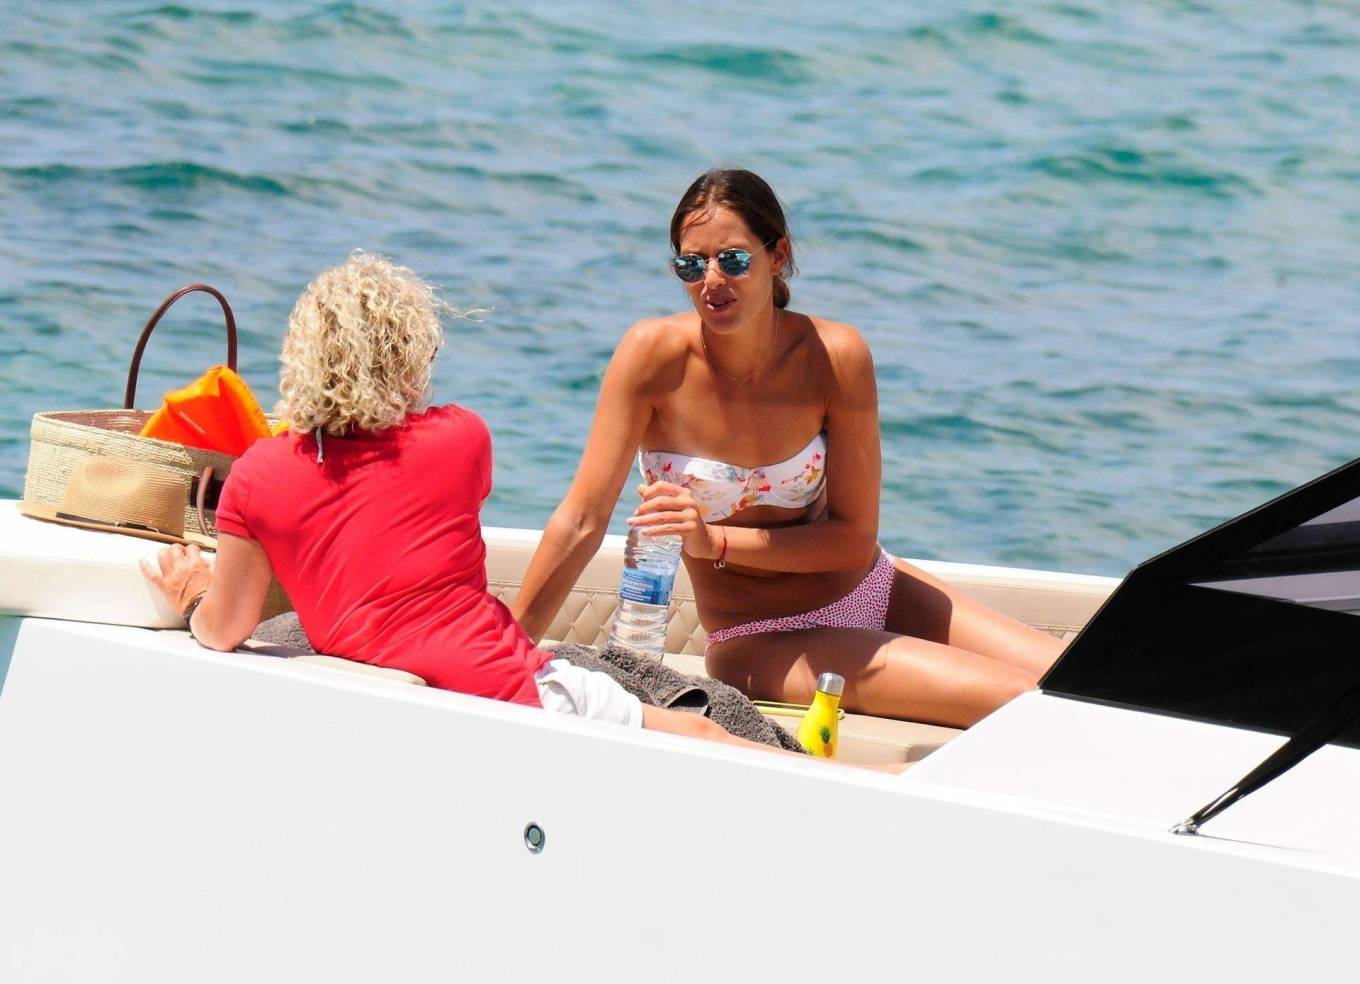 Ana Ivanovic in Bikini on a yacht in Mallorca adds